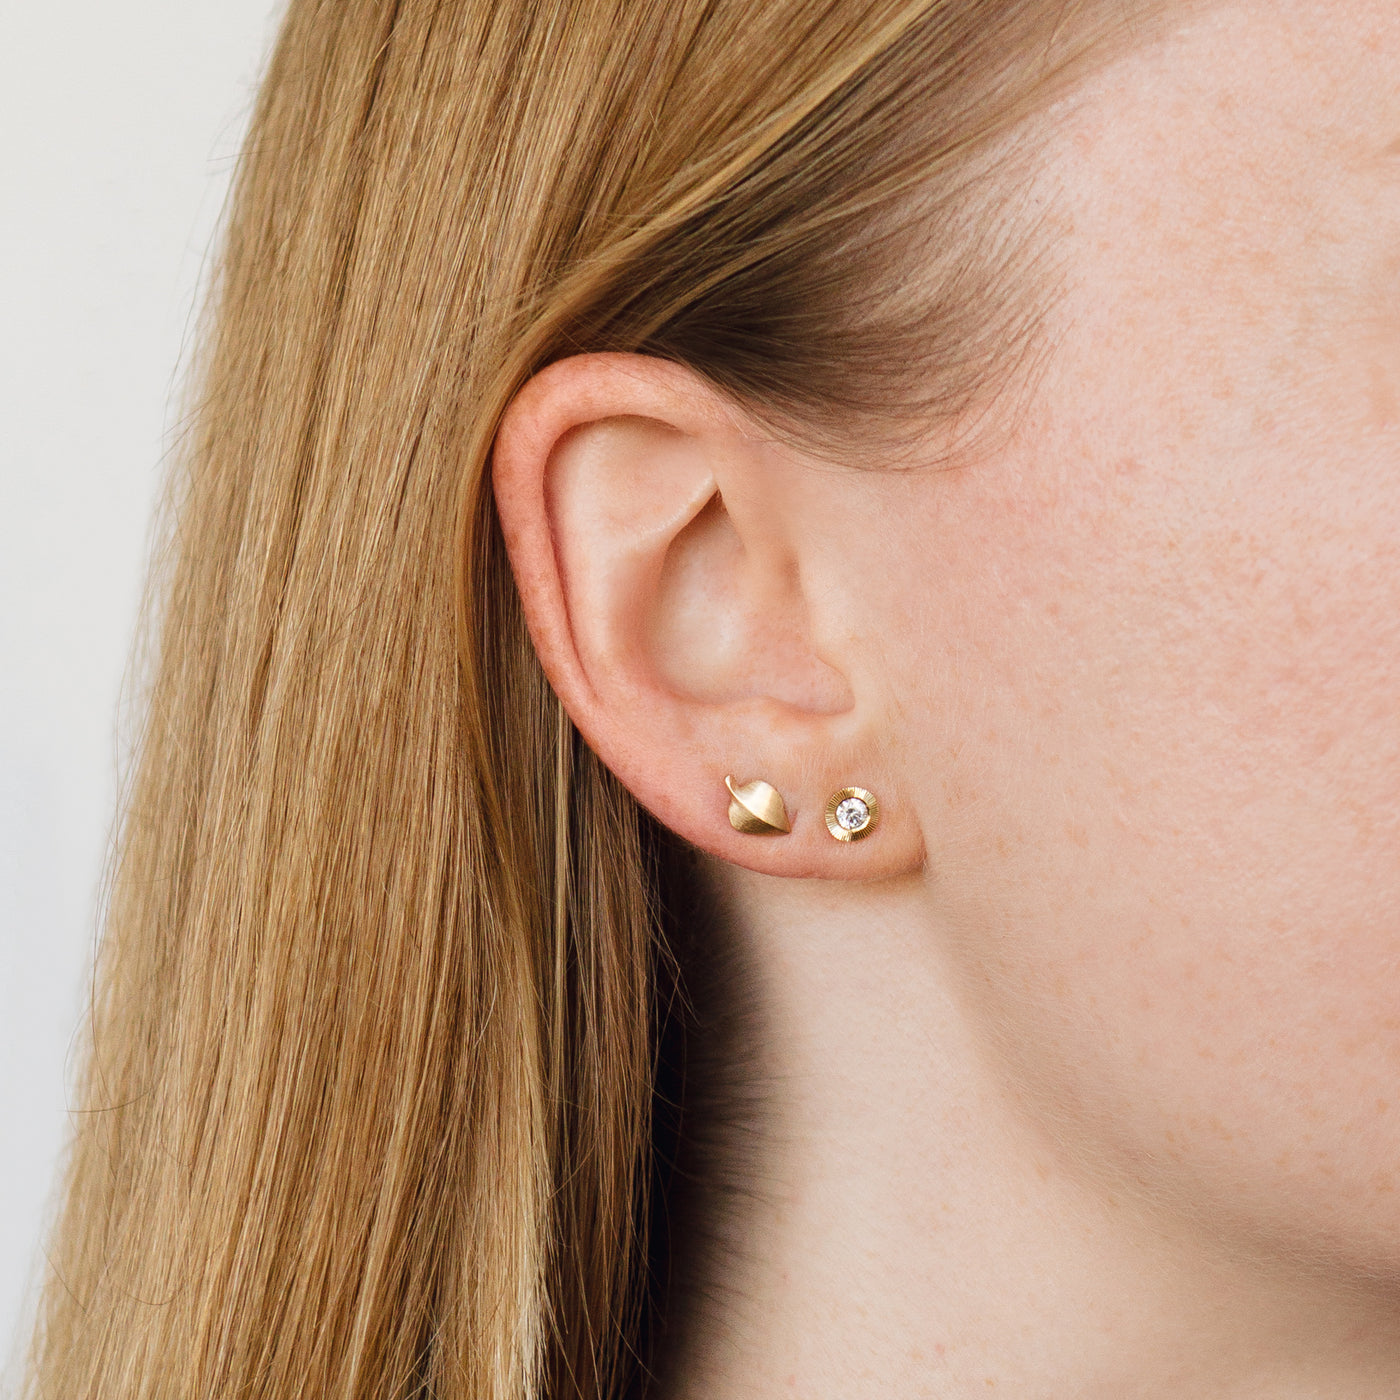 gold aspen leaf stud earrings with diamond aurora stud earrings on an ear